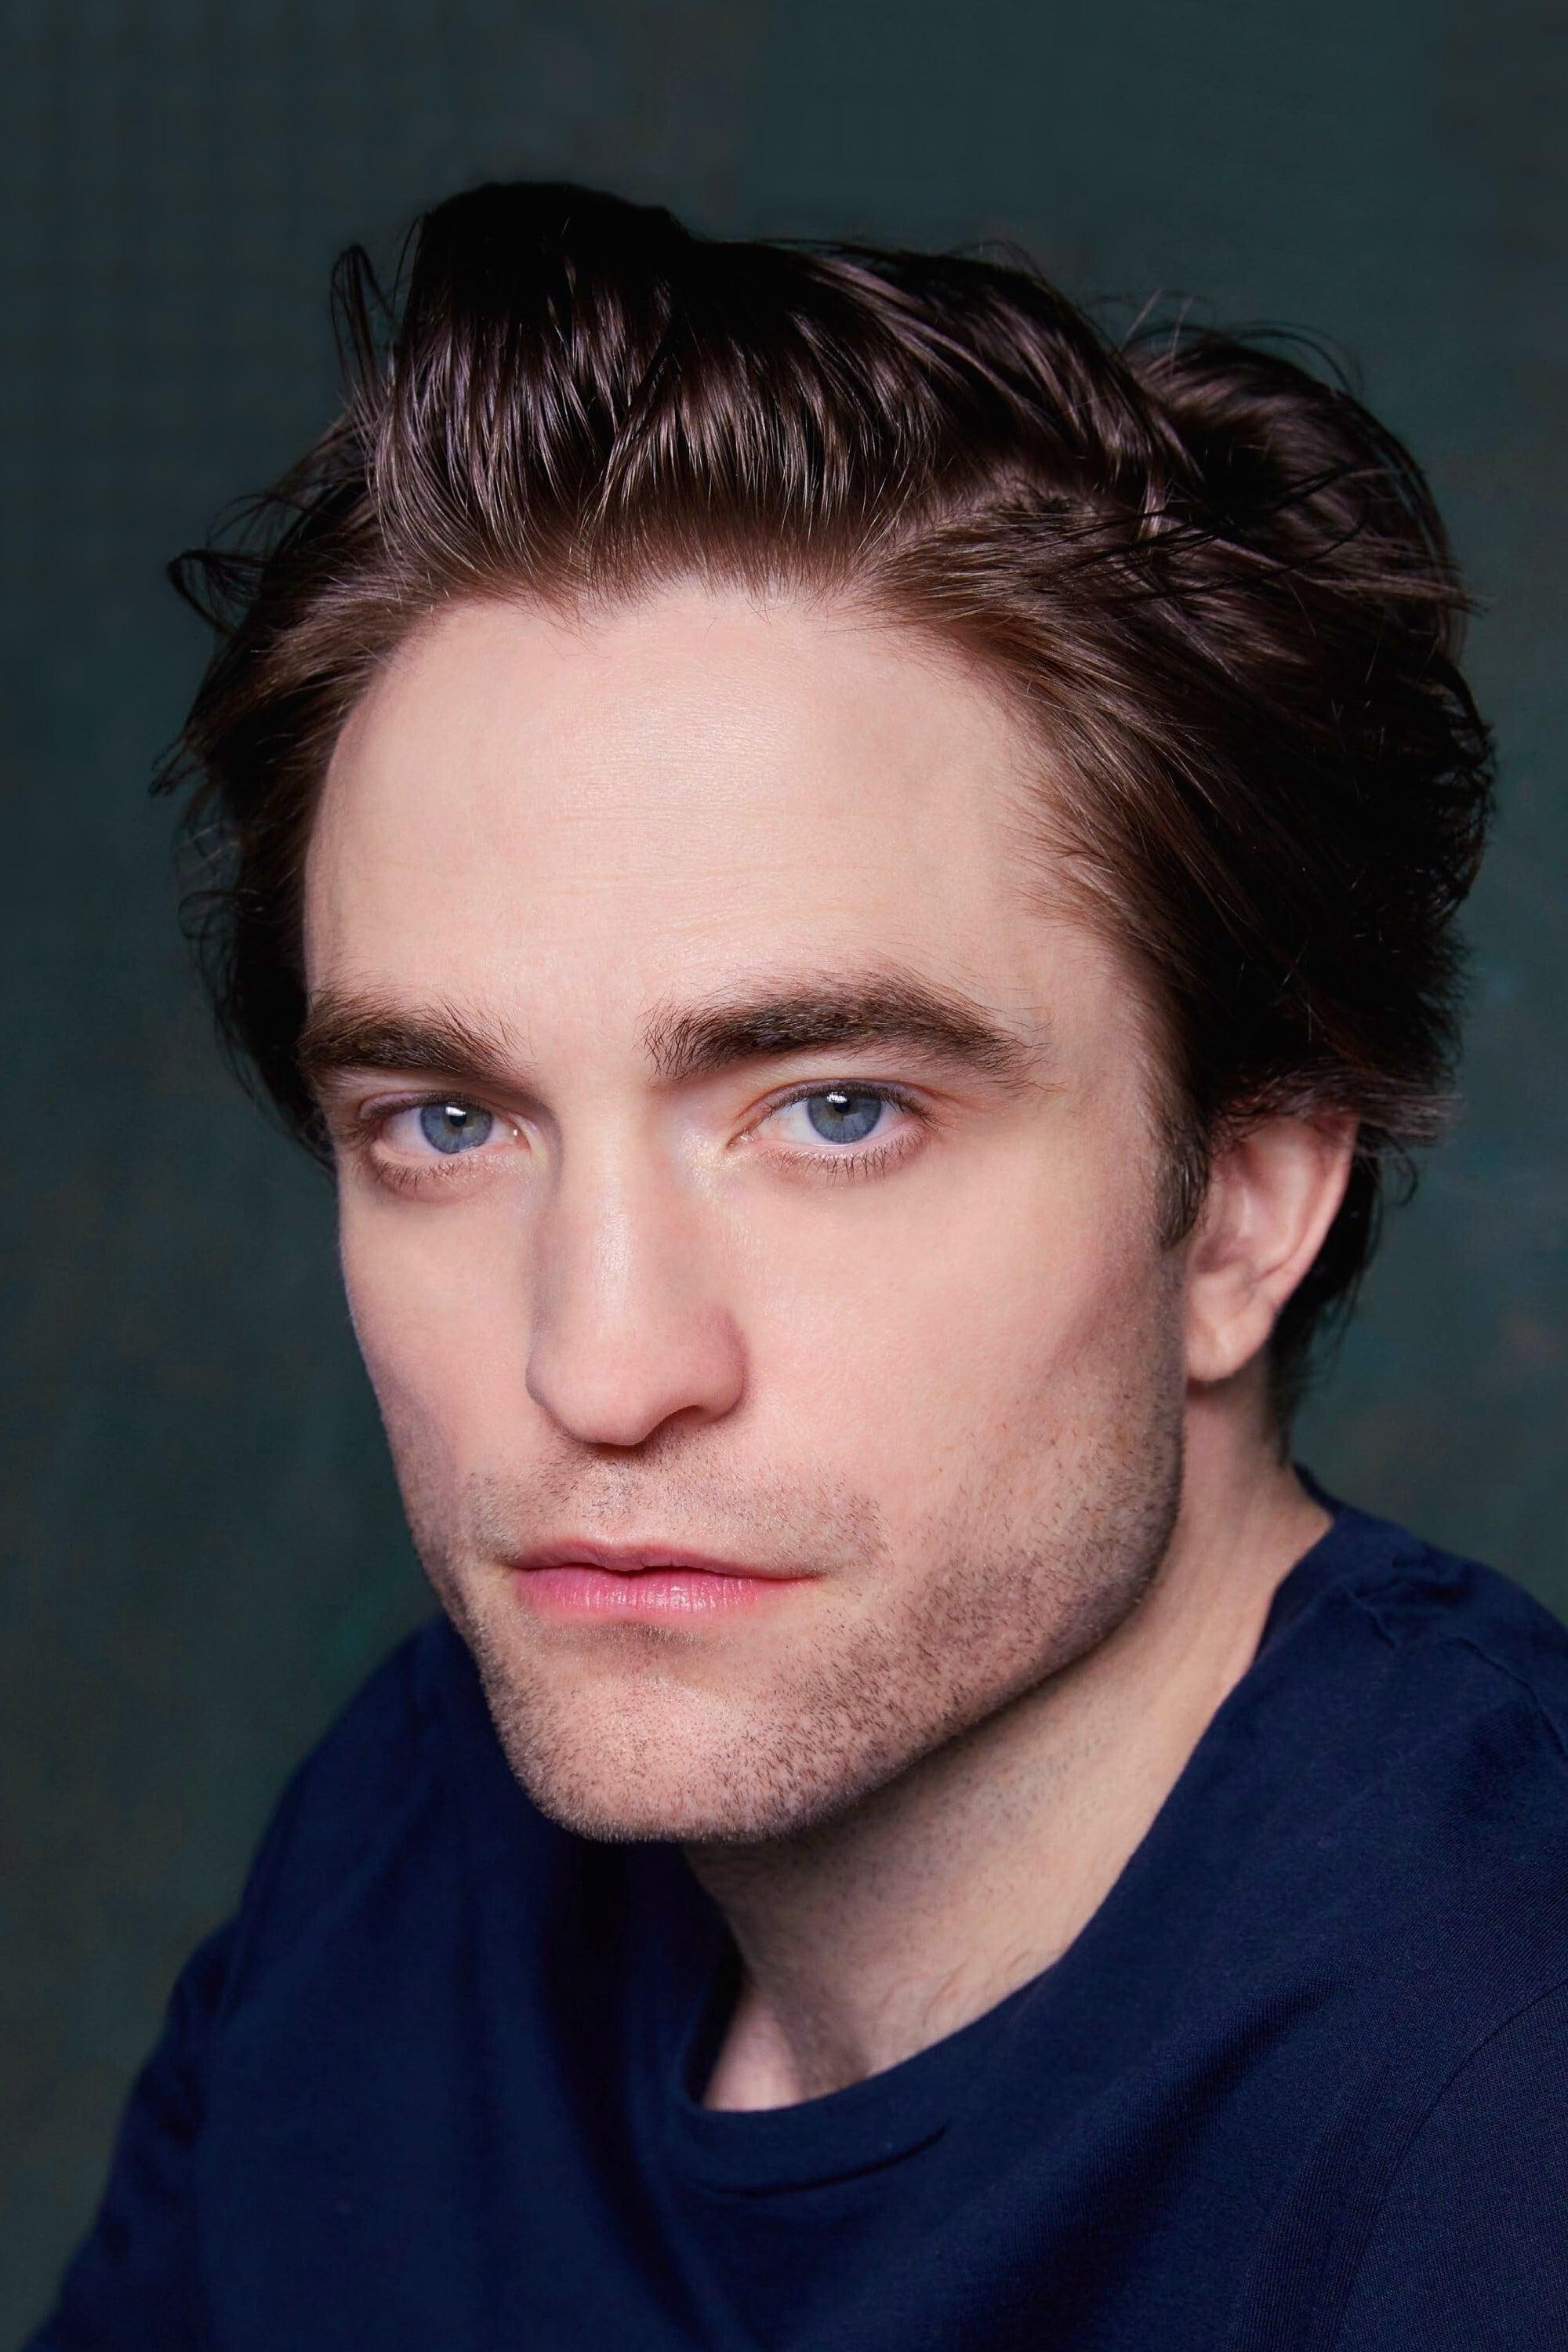 Robert Pattinson | Cedric Diggory